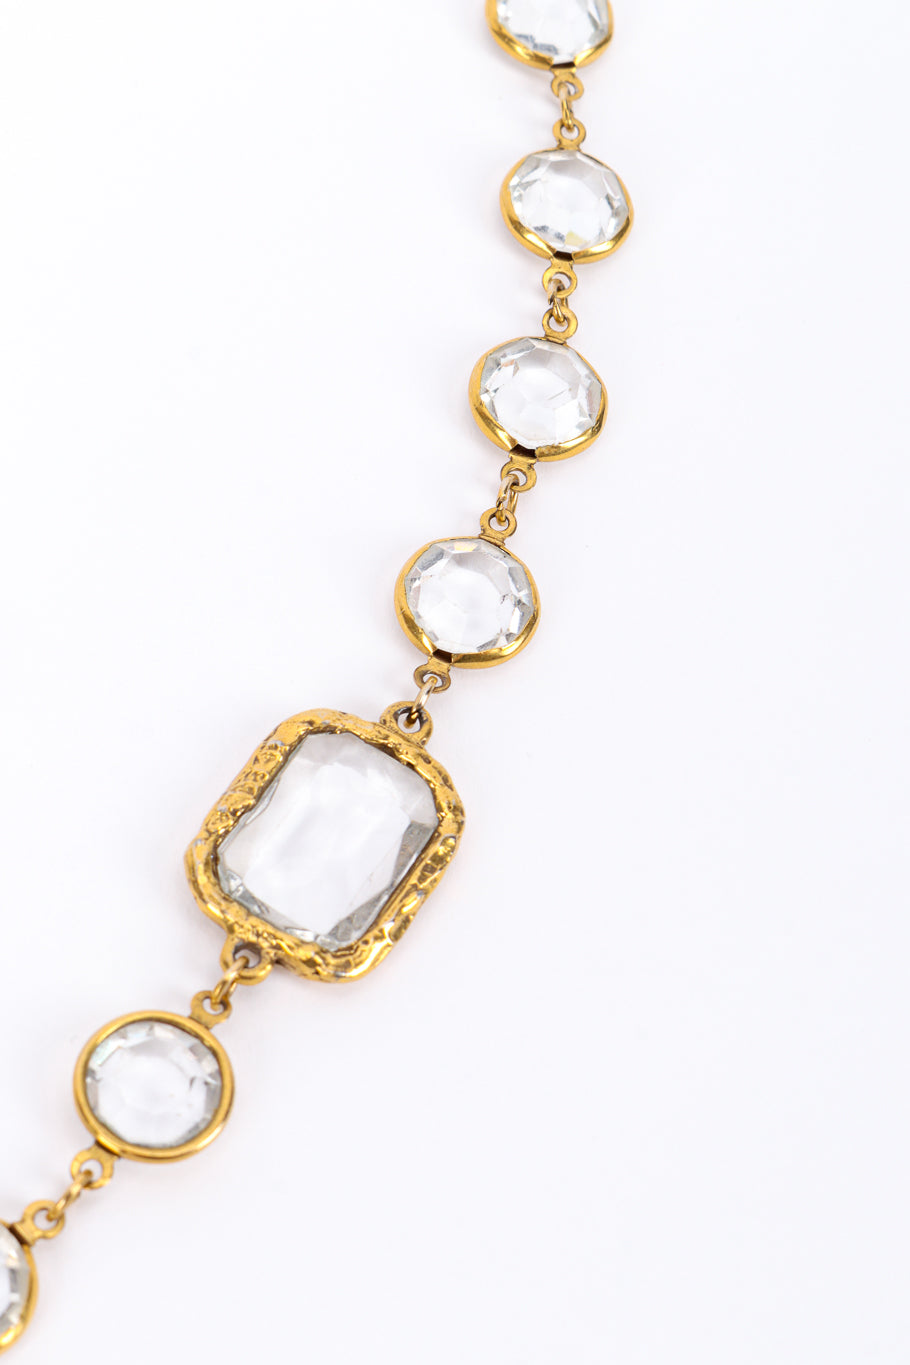 Vintage Chanel Crystal Sautoir Necklace II crystal closeup @recessla